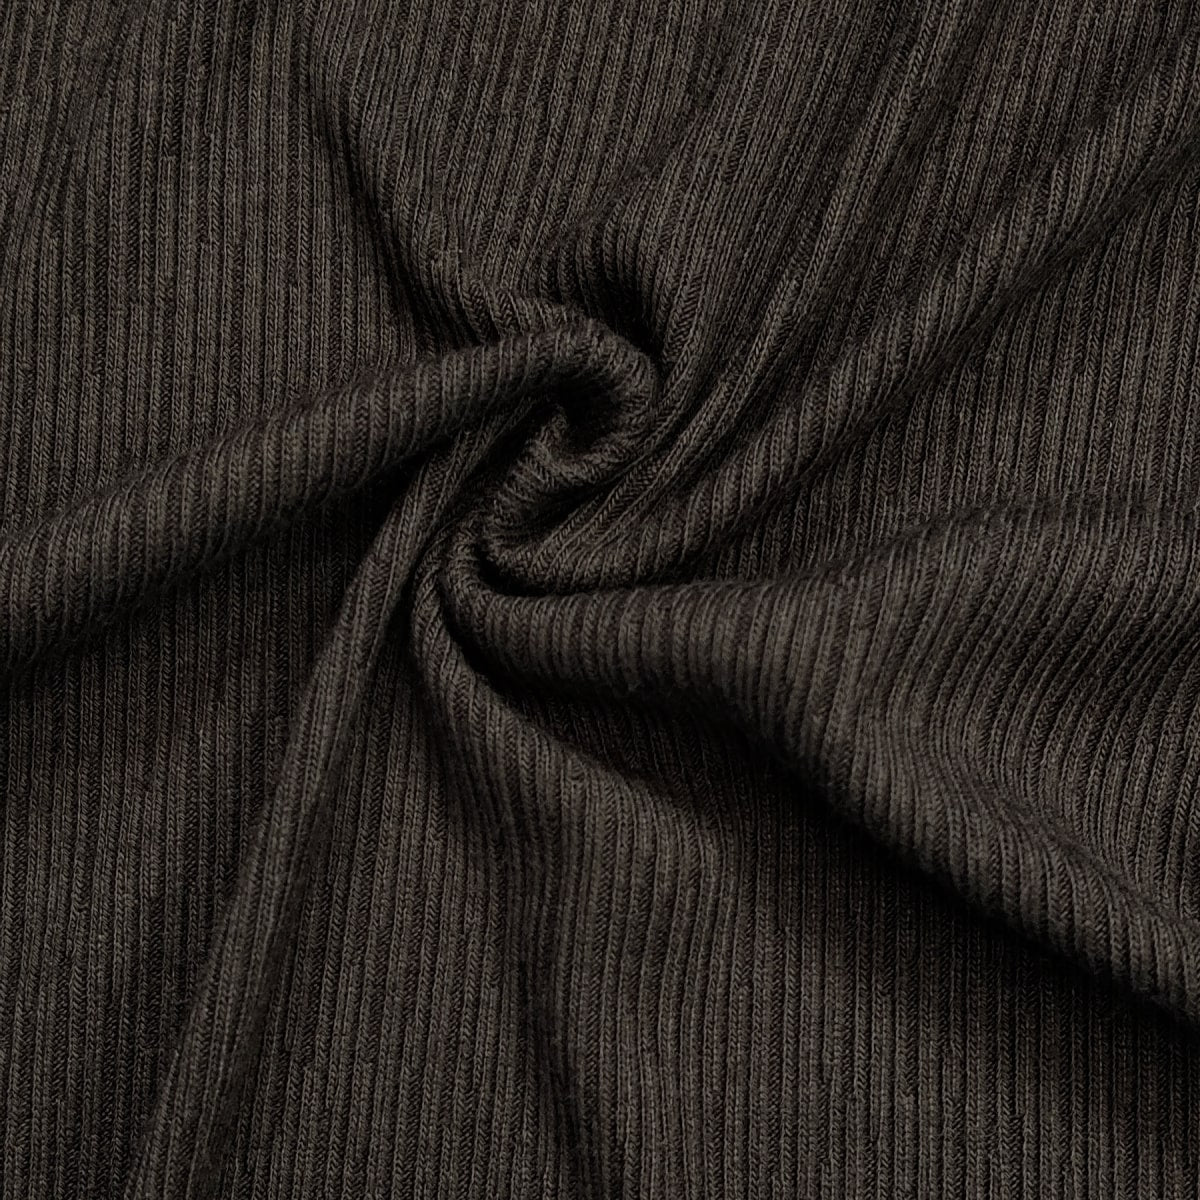 Rib Knit Fabric -  Canada